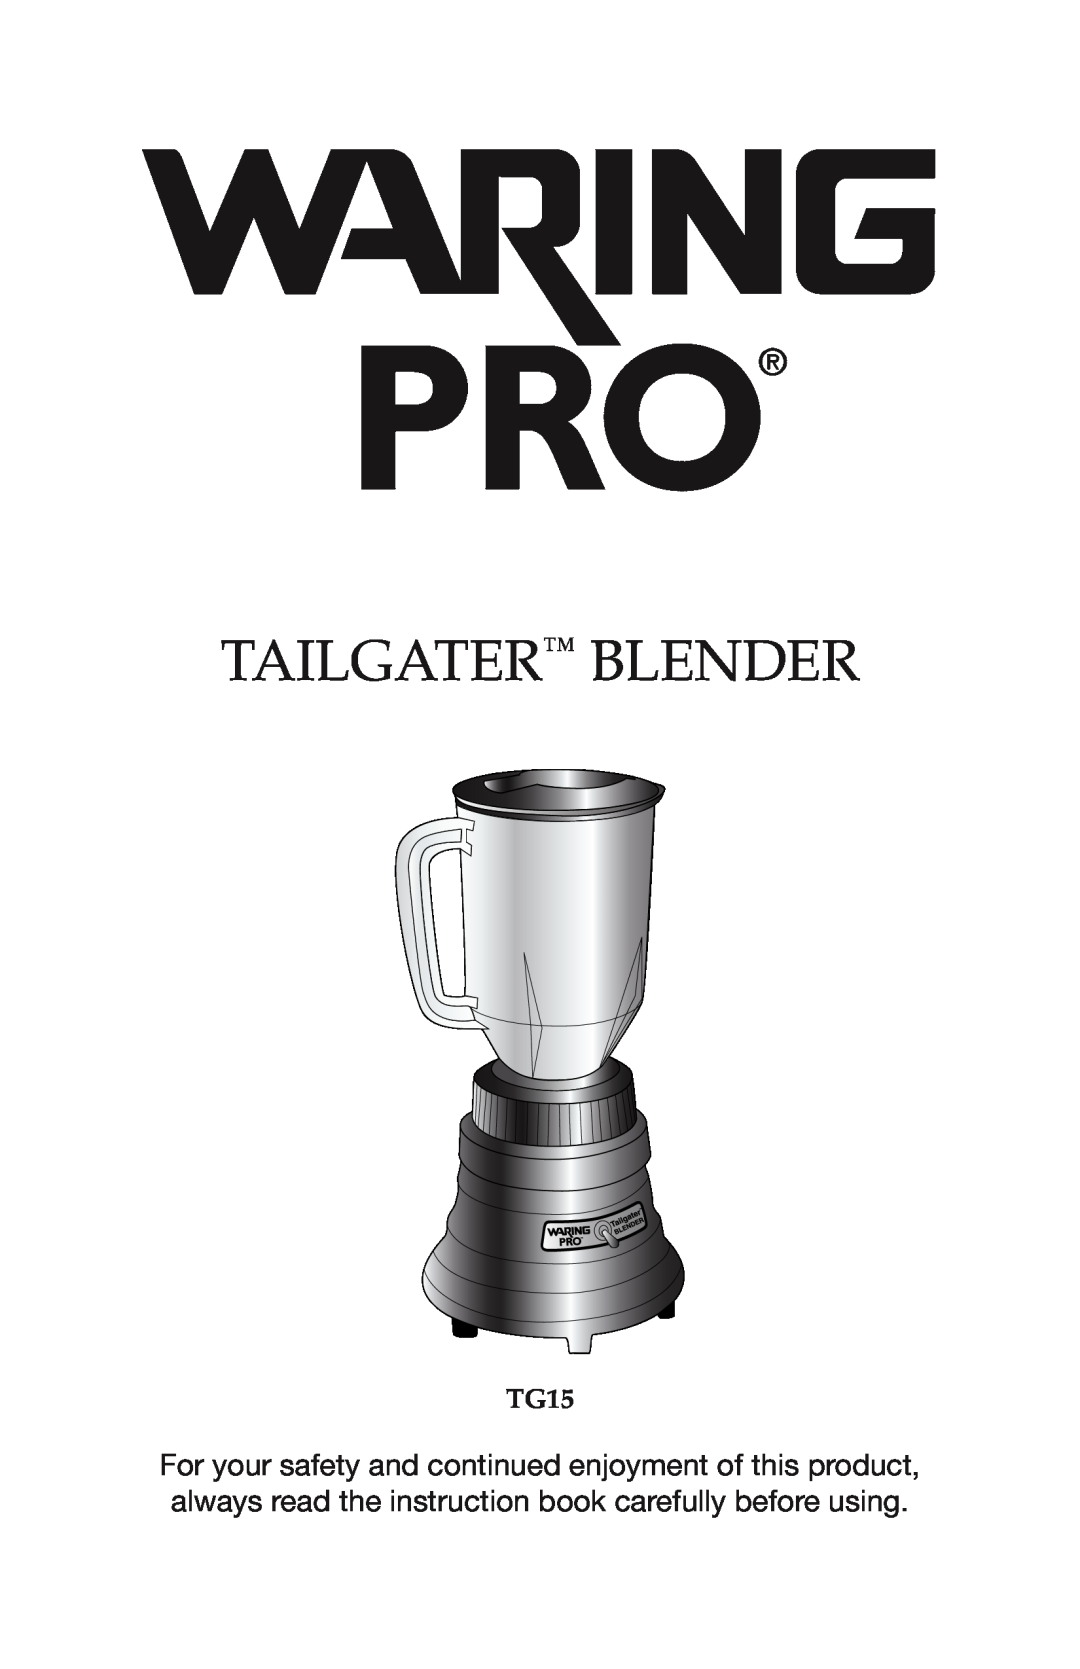 Waring TG15 manual Tailgater Blender 